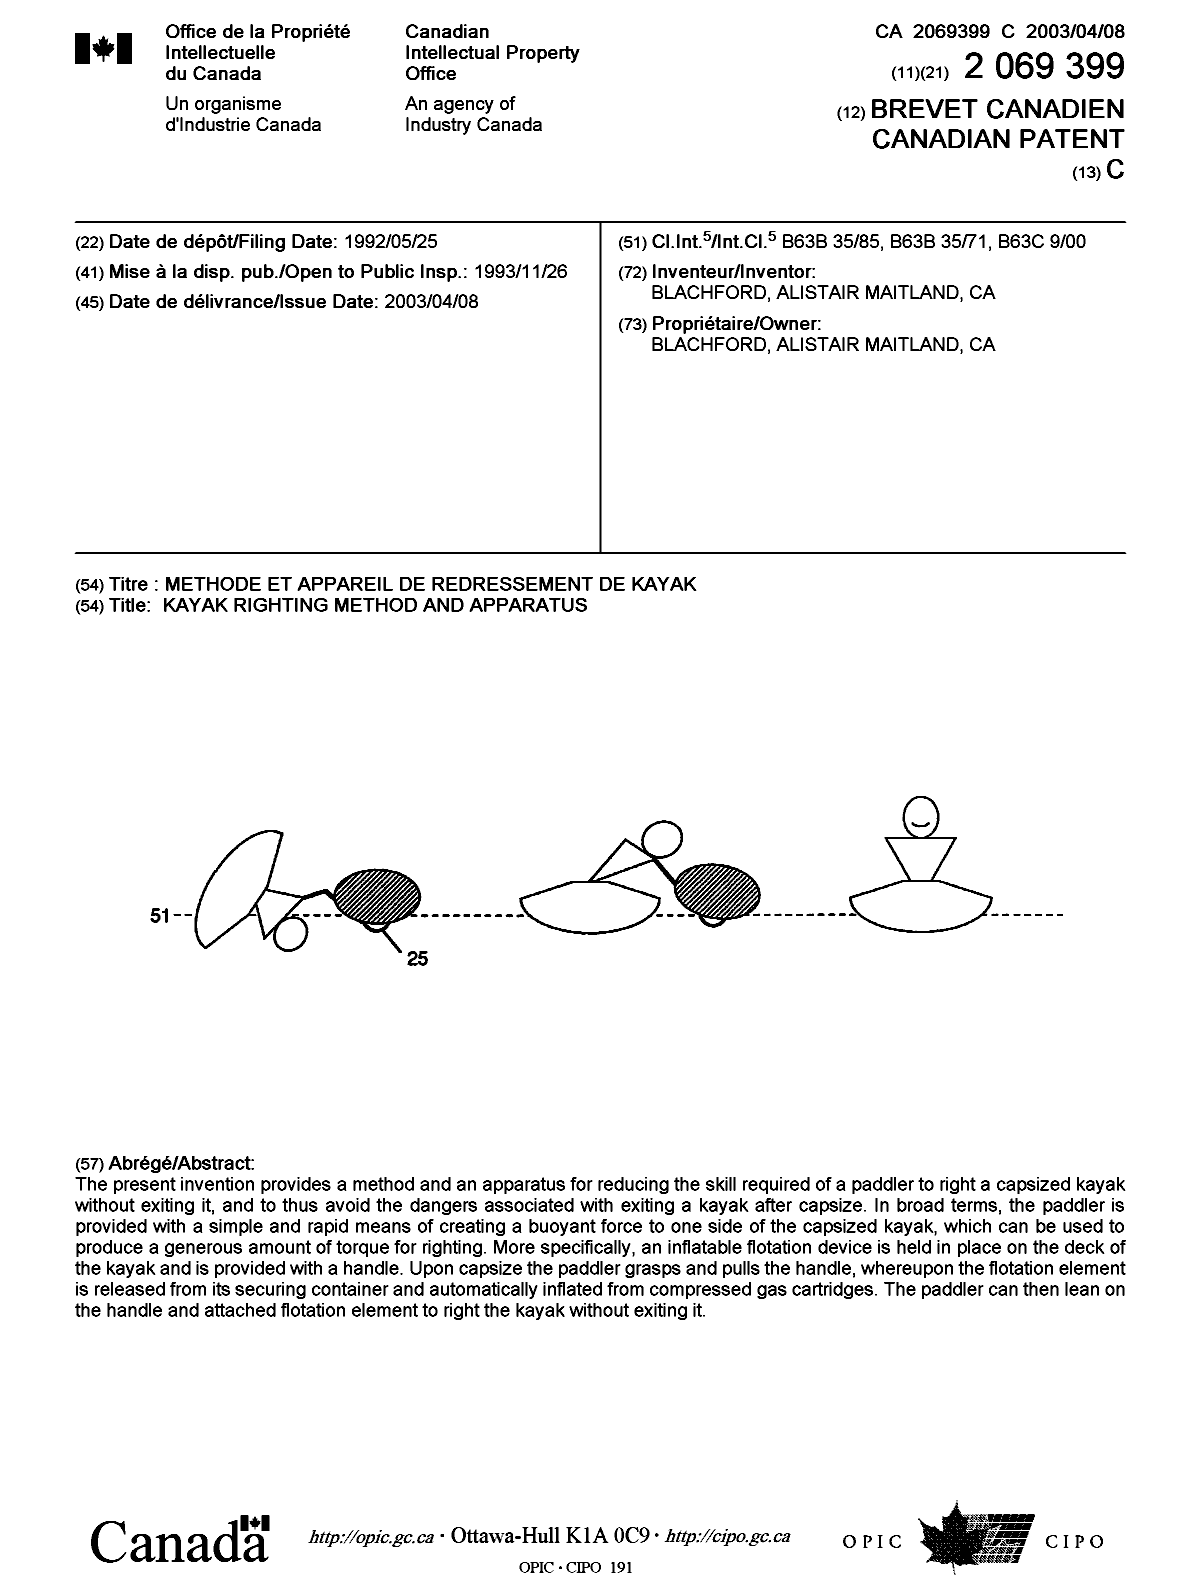 Document de brevet canadien 2069399. Page couverture 20021204. Image 1 de 1